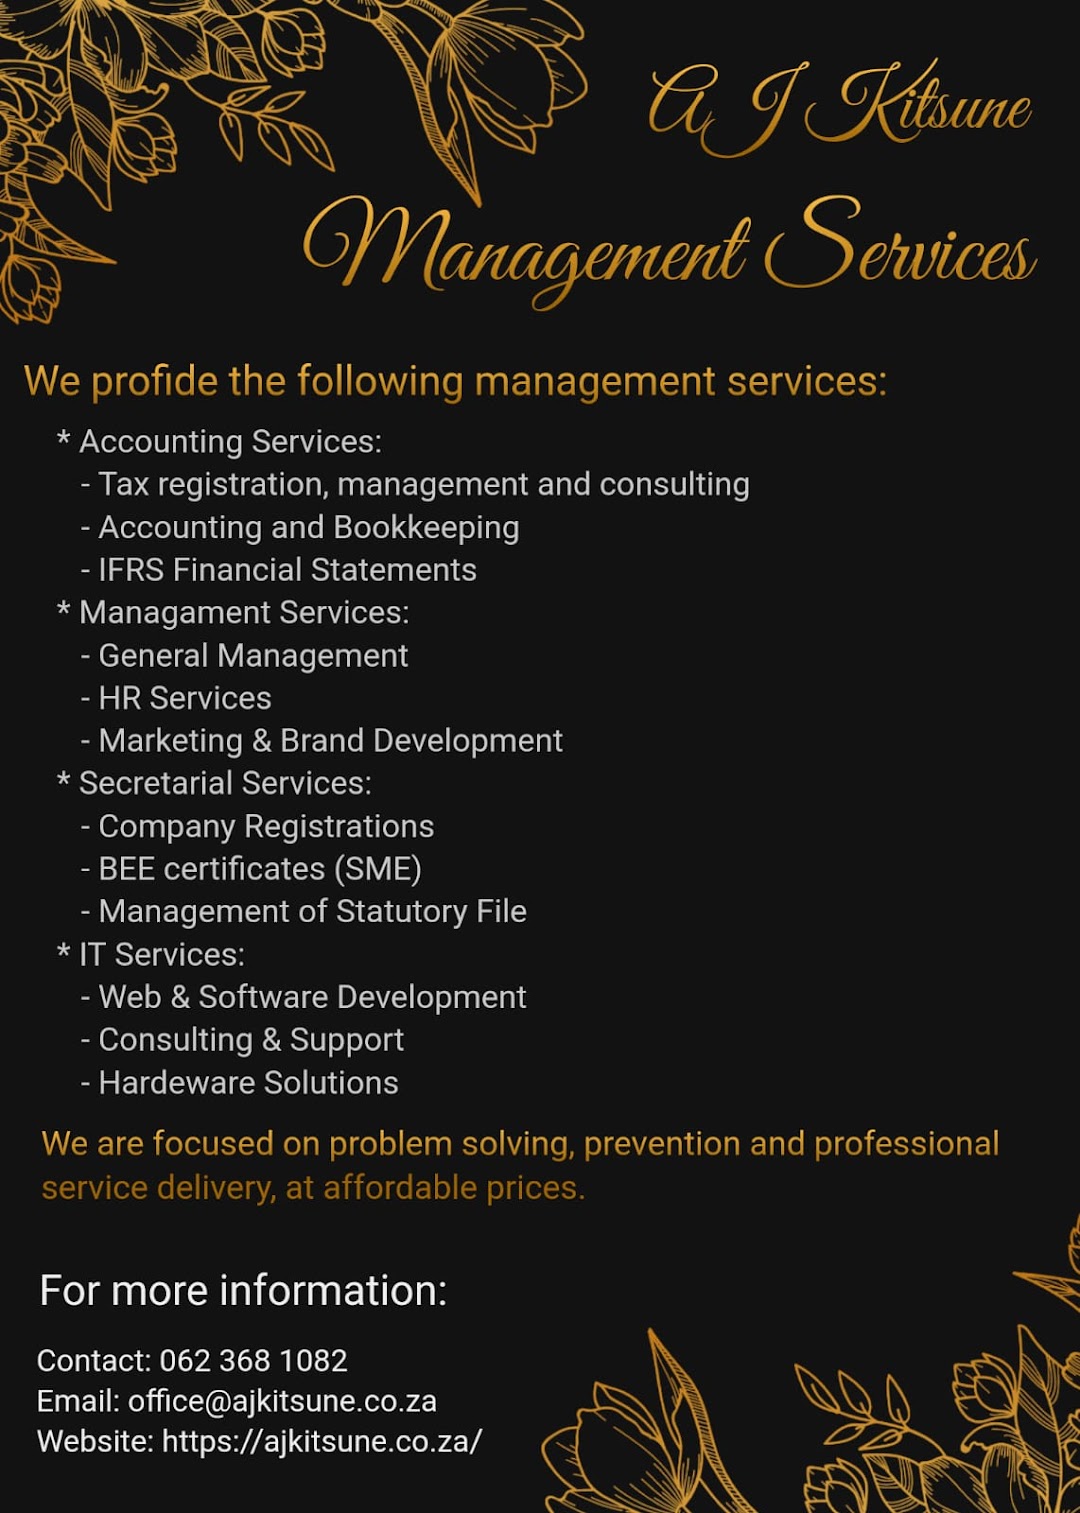 AJKitsune Management Services